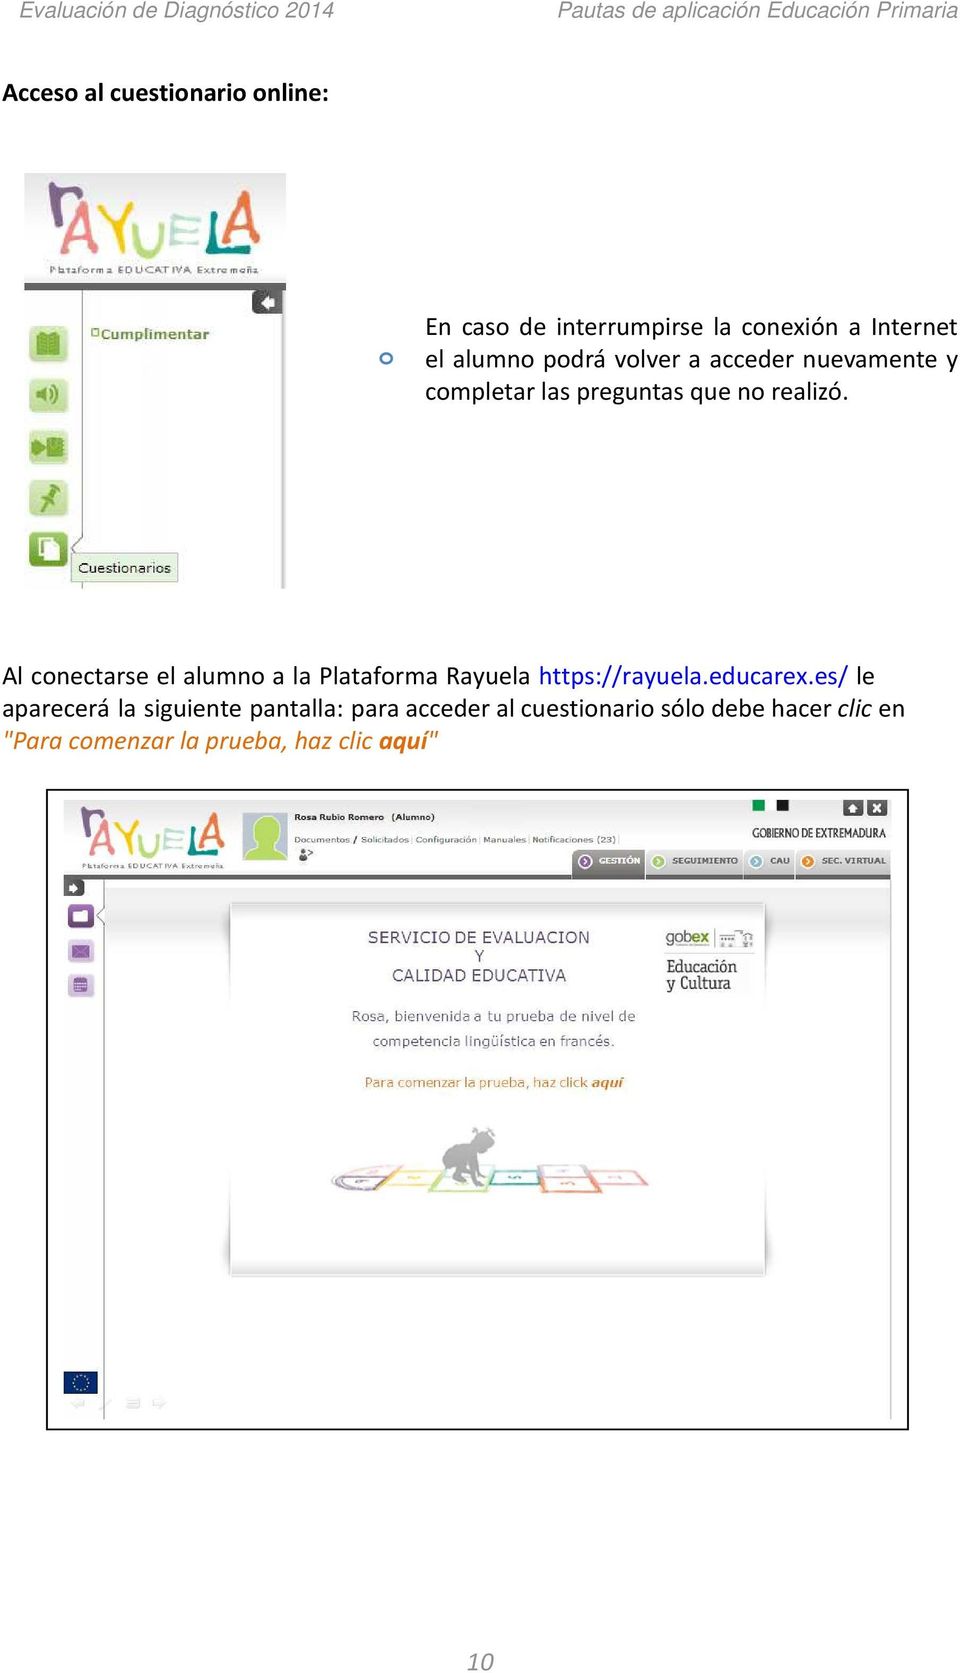 Al conectarse el alumno a la Plataforma Rayuela https://rayuela.educarex.